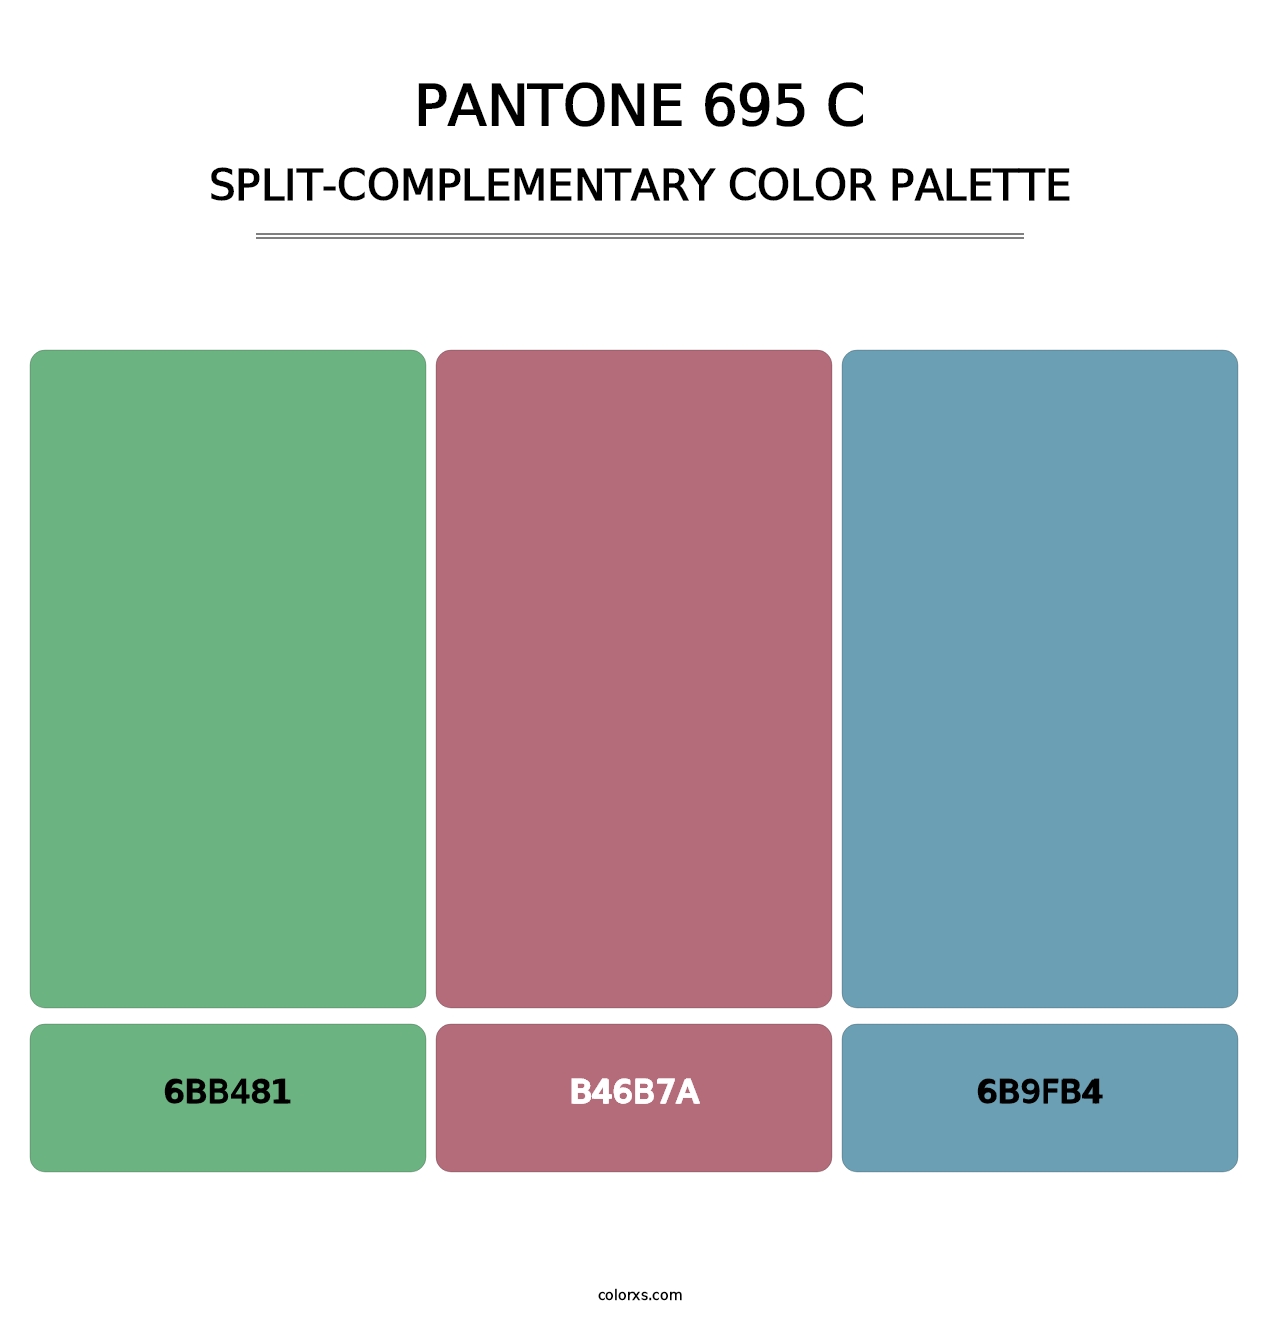 PANTONE 695 C - Split-Complementary Color Palette